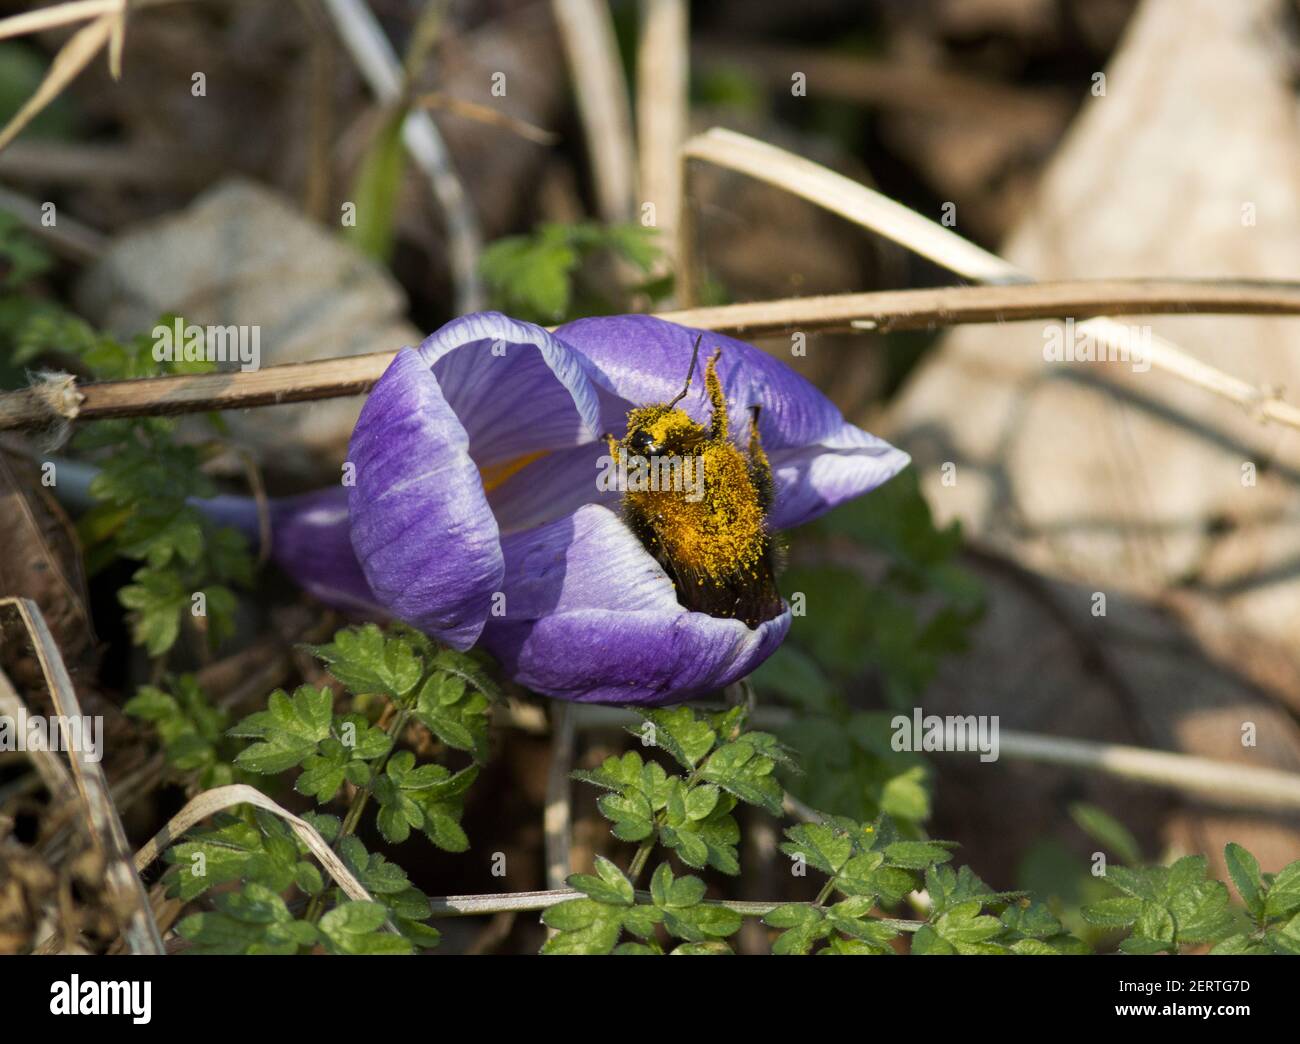 Una Bumble-Bee recoge polen de crúcus de floración temprana. La nueva reina de las estaciones Bumble-Bees emergen temprano cuando las primeras flores de primavera comienzan a florecer. Foto de stock